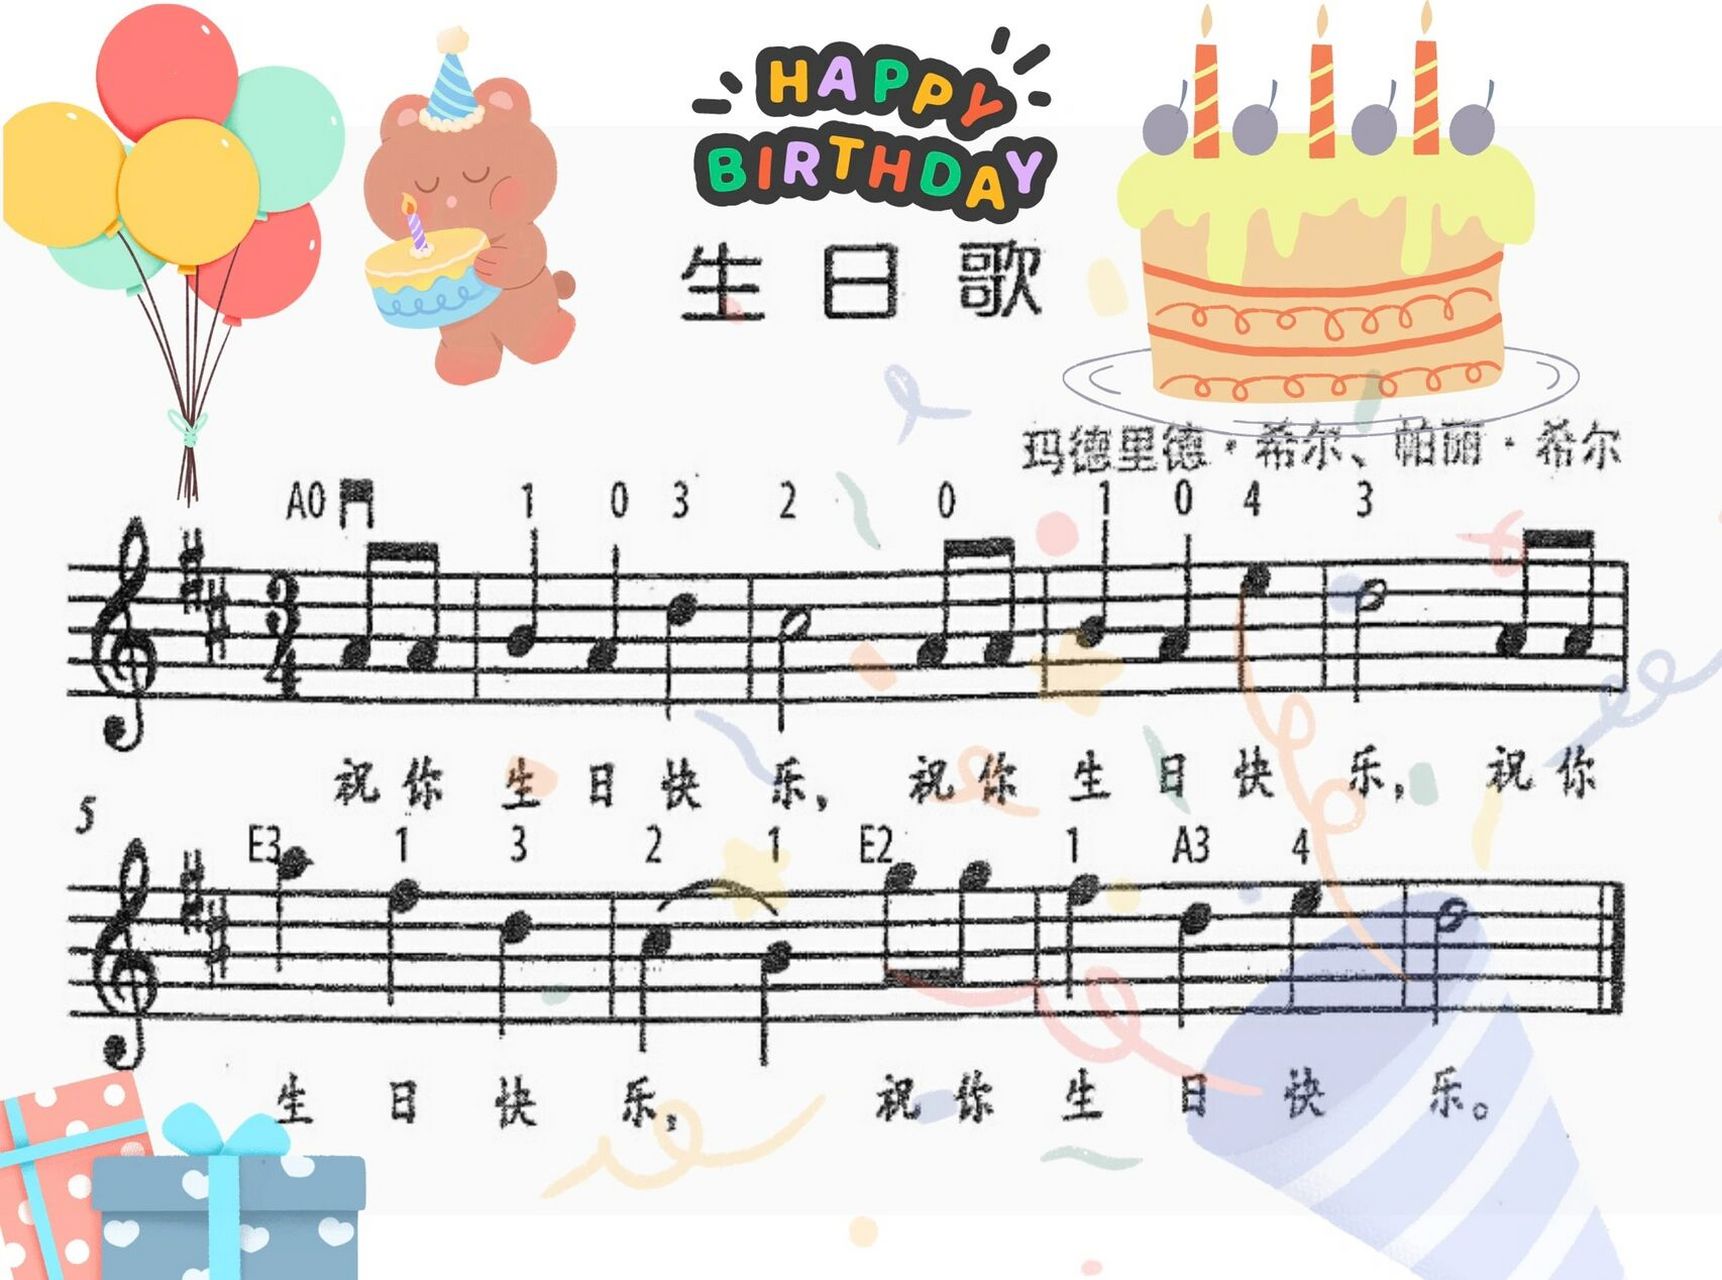 生日快乐简谱小提琴曲图片